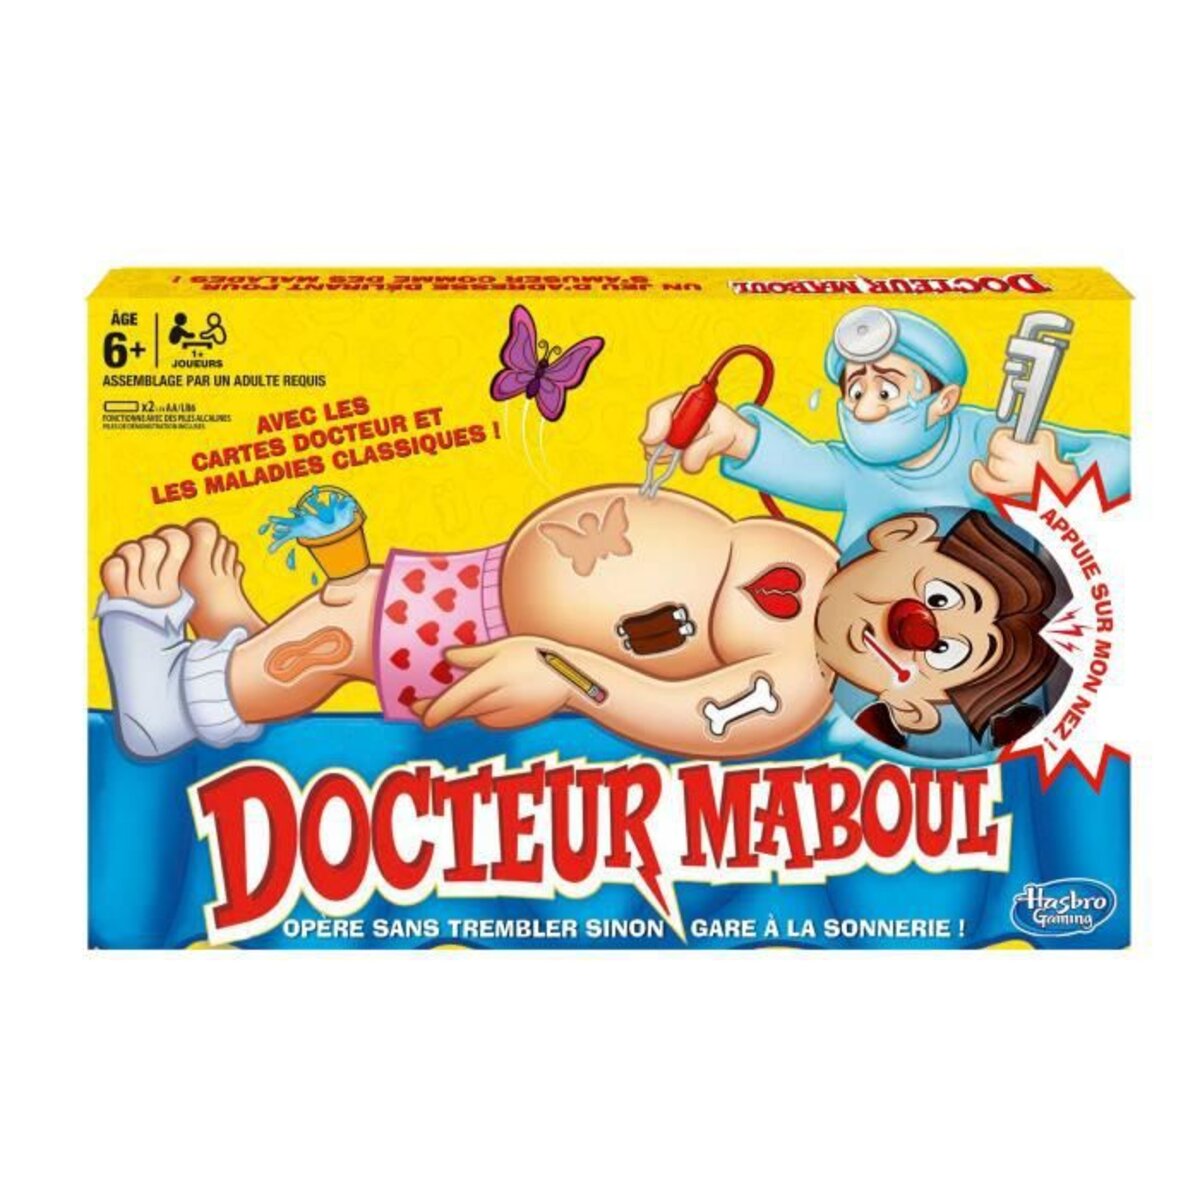 Docteur Maboul : Pour se payer une opération, le créateur du jeu demande de  l'aide aux internautes !